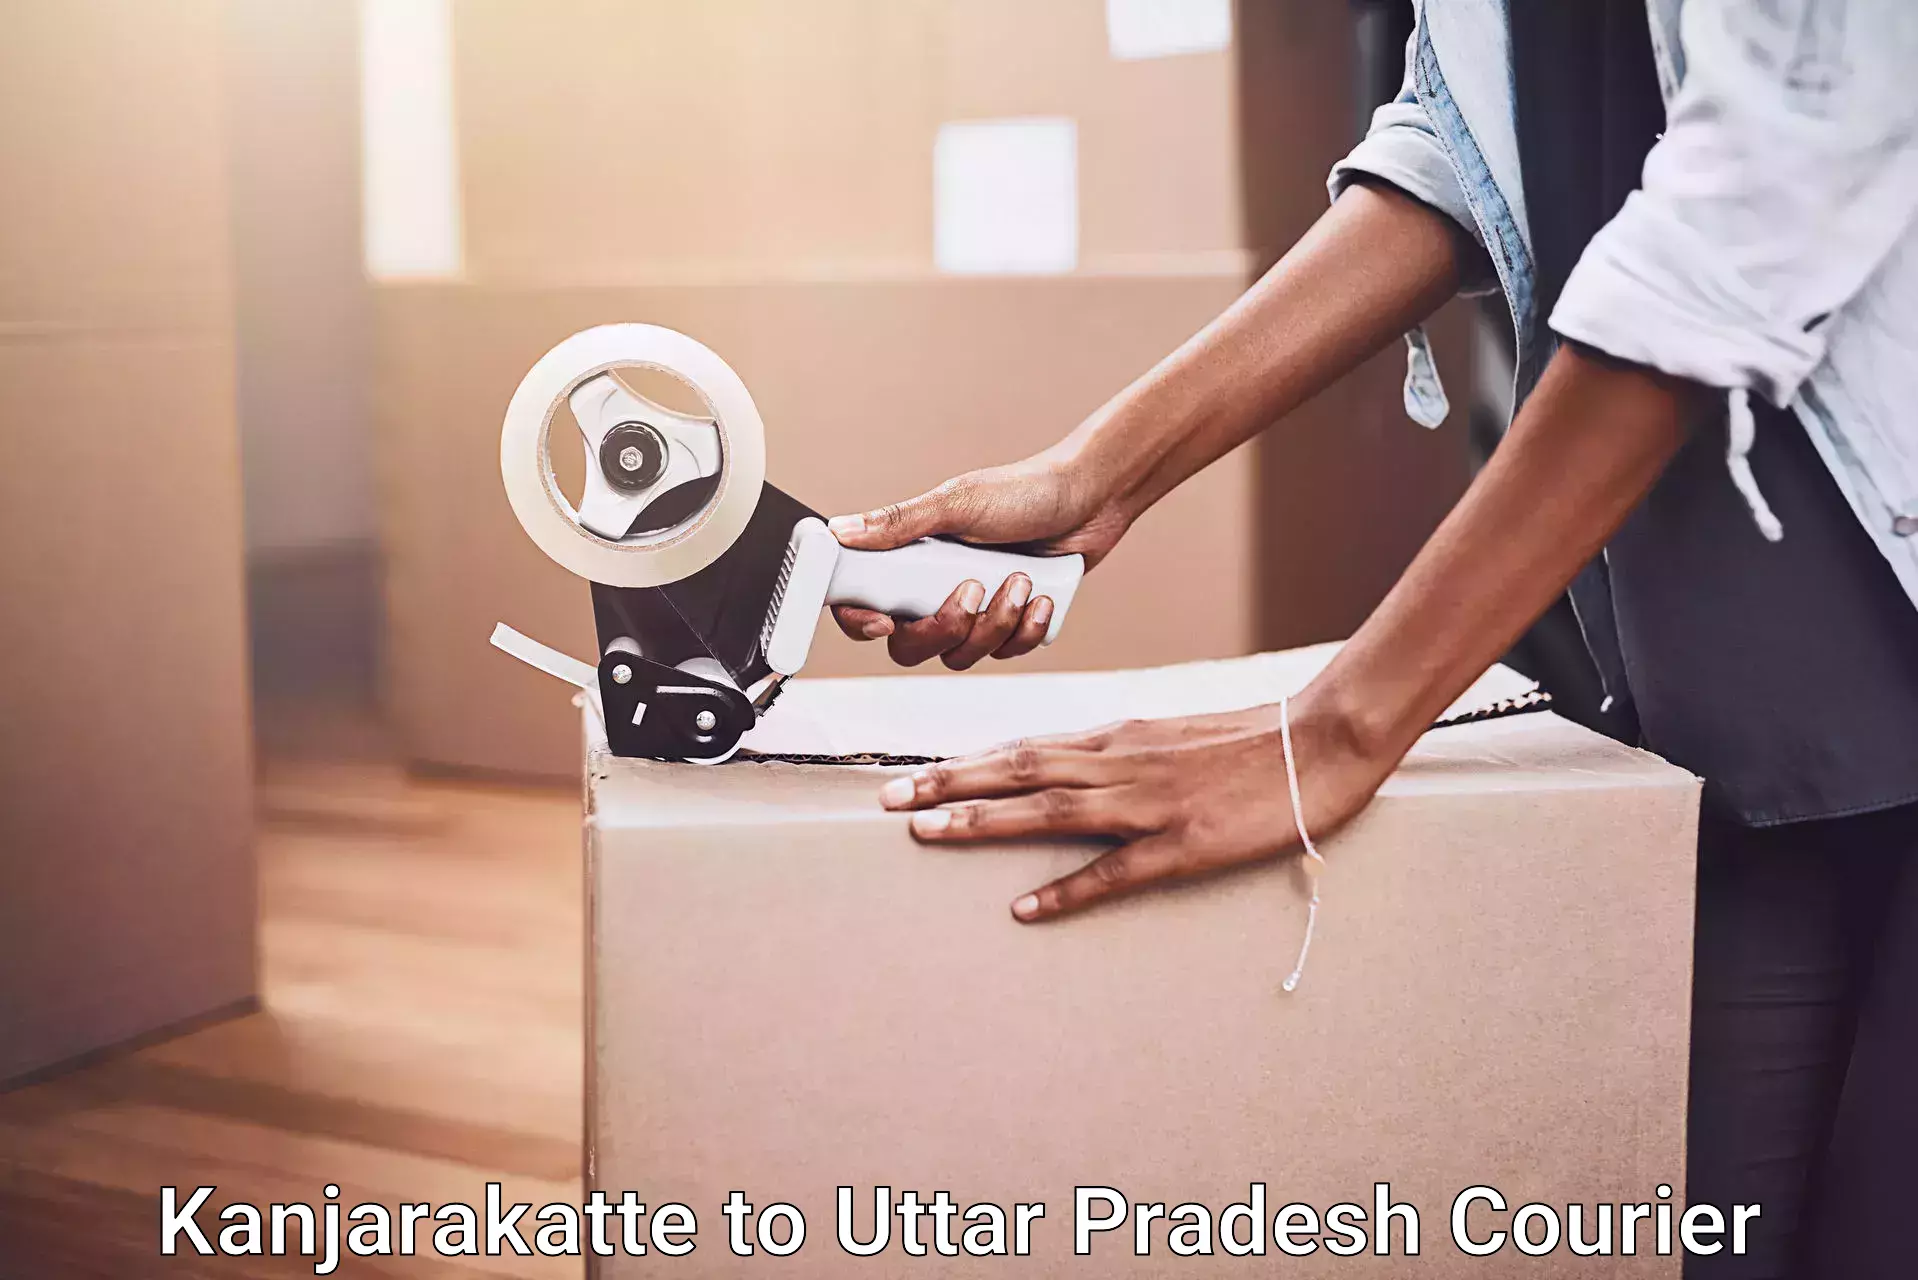 Furniture moving service Kanjarakatte to Uttar Pradesh